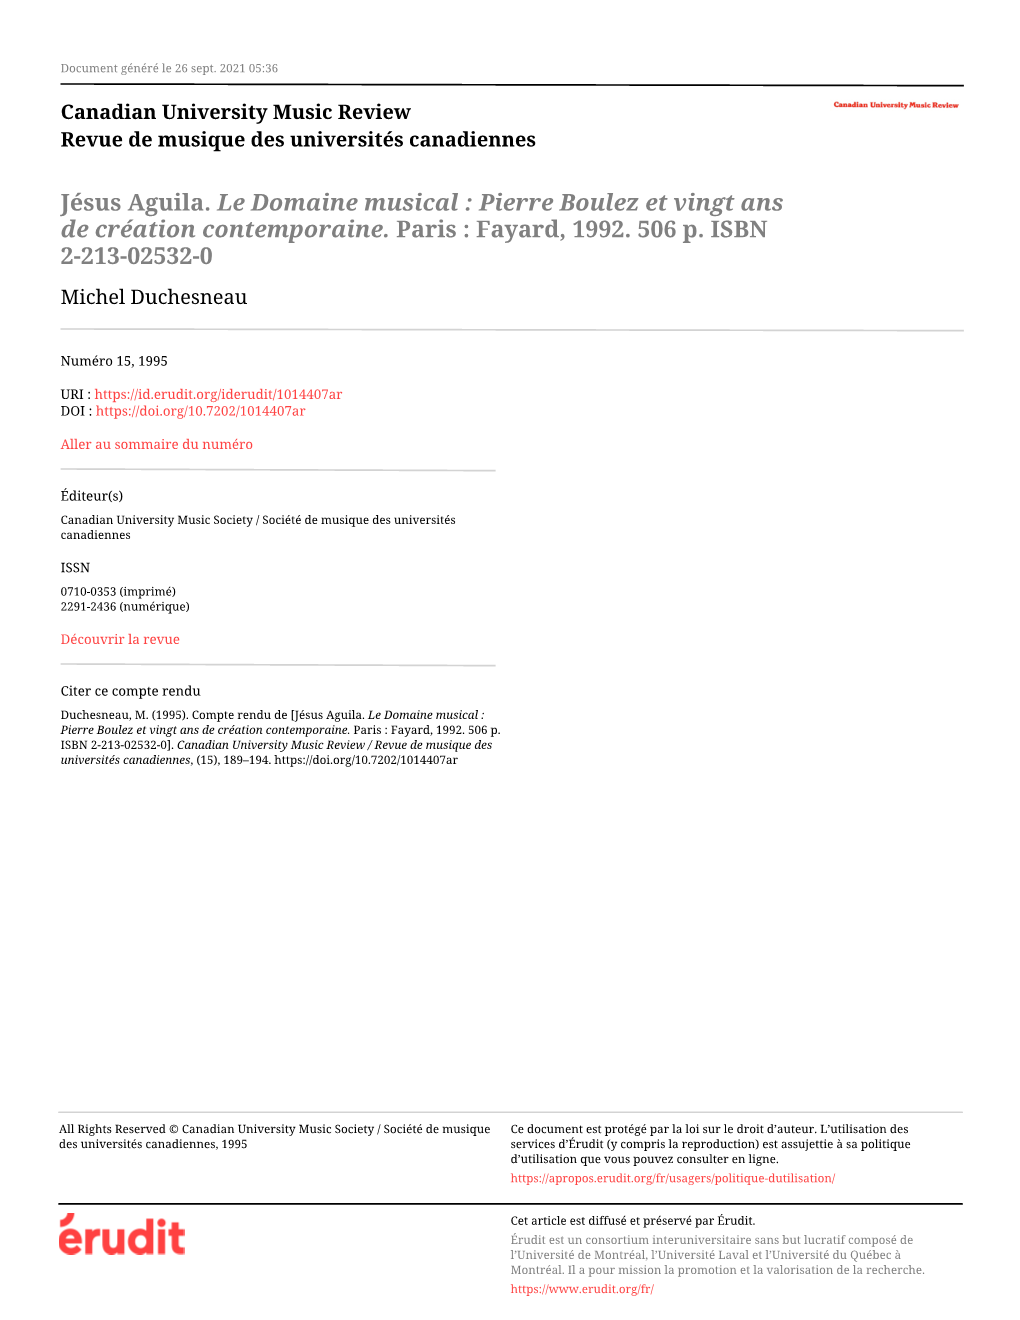 Jésus Aguila. Le Domaine Musical : Pierre Boulez Et Vingt Ans De Création Contemporaine